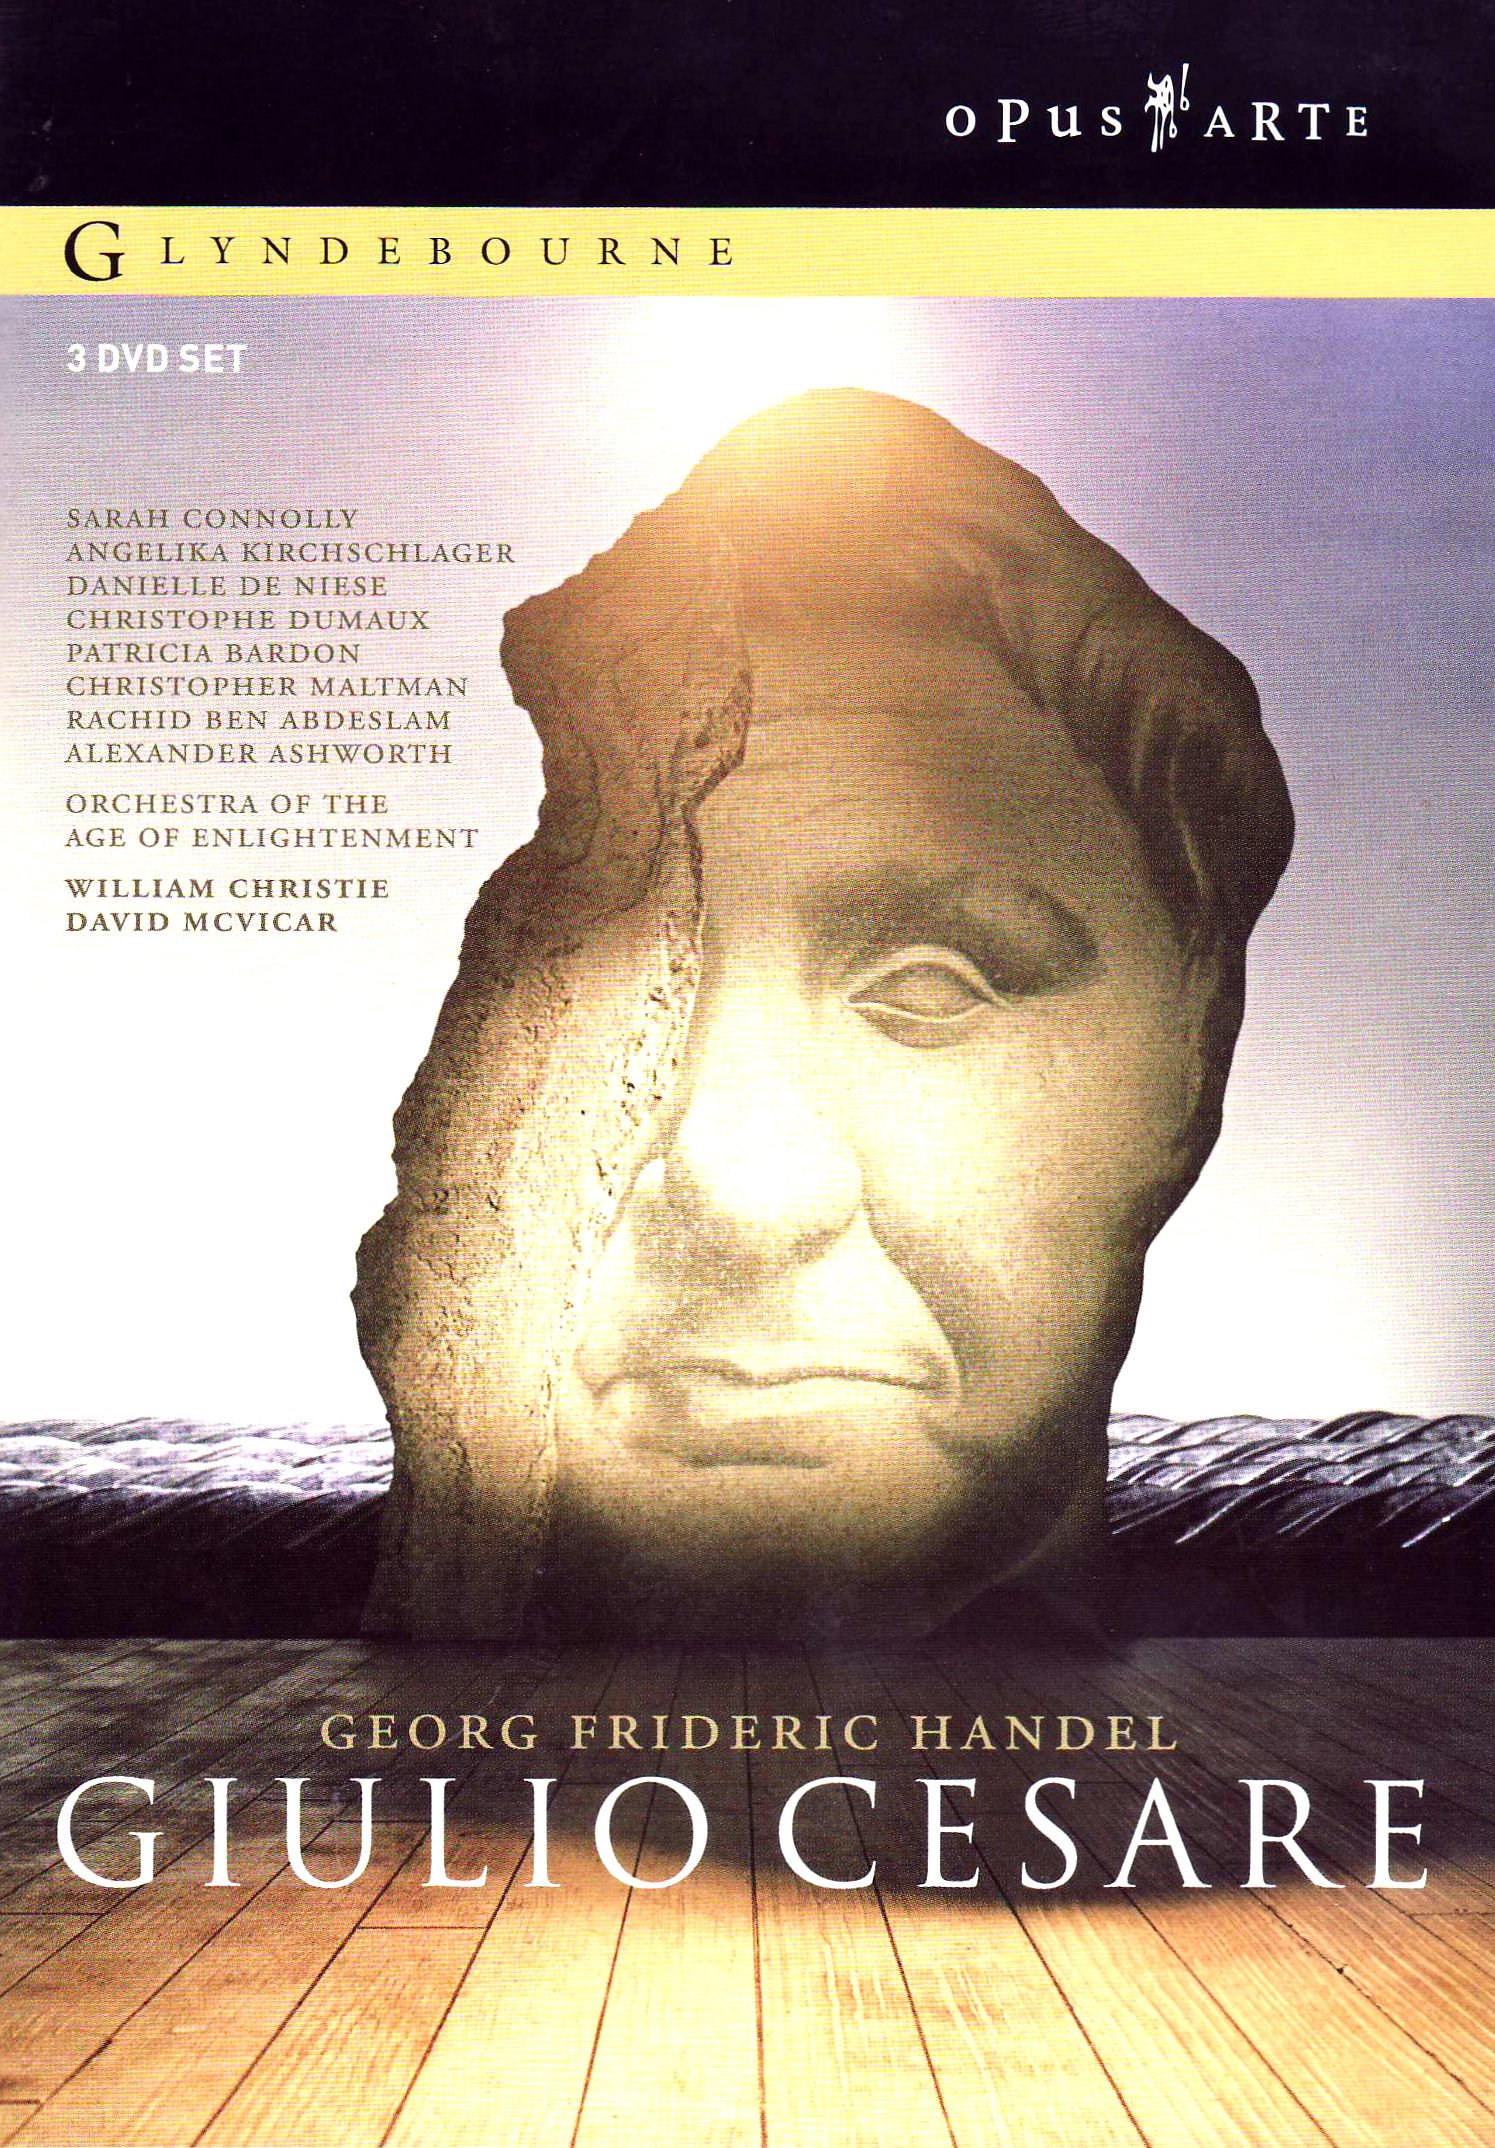 Music Dvd Georg Friedrich Handel - Giulio Cesare (3 Dvd) NUOVO SIGILLATO, EDIZIONE DEL 01/04/2006 SUBITO DISPONIBILE